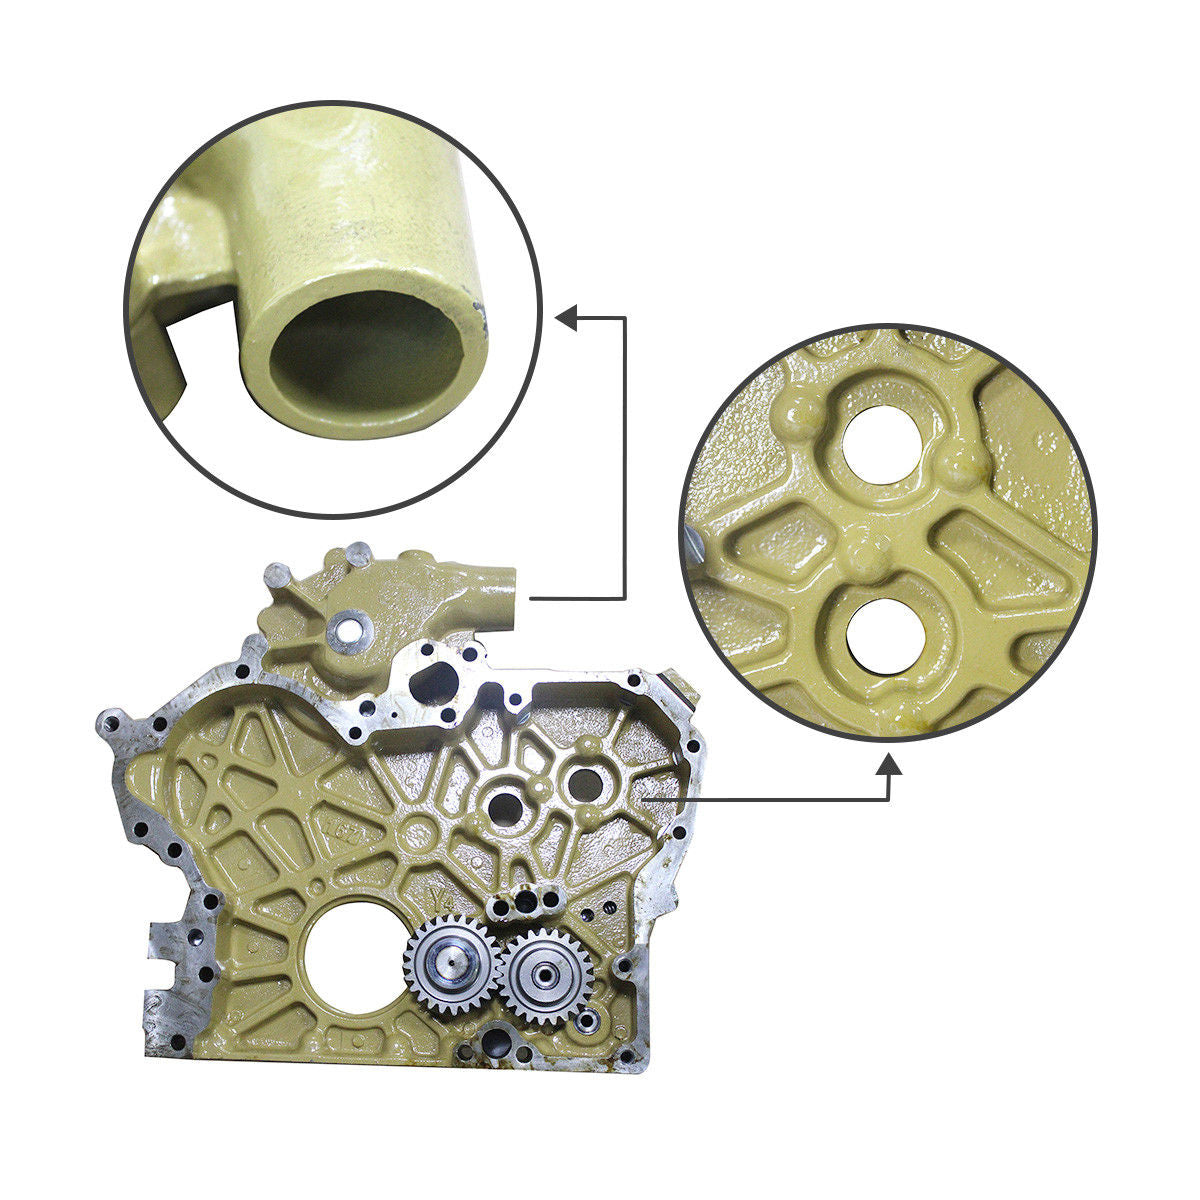 178-6539 34335-23010 Oil Pump for Caterpillar 3066 S6KT Engine Gear Housing - Sinocmp